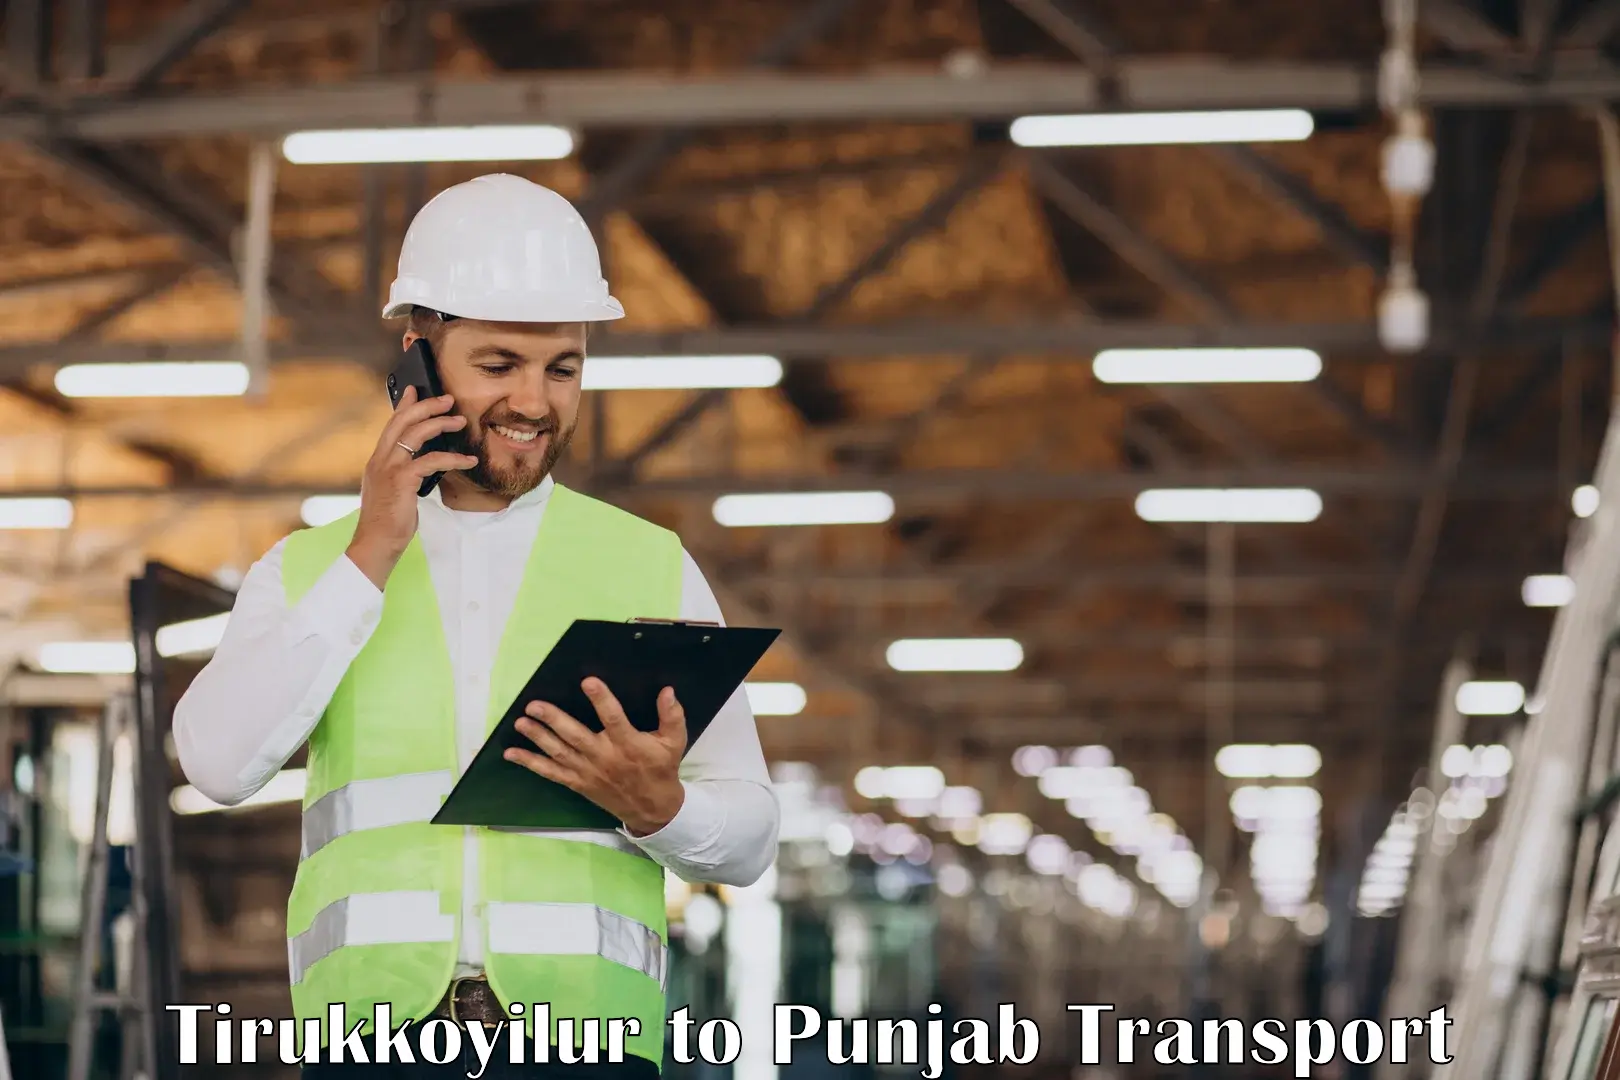 Commercial transport service Tirukkoyilur to Punjab